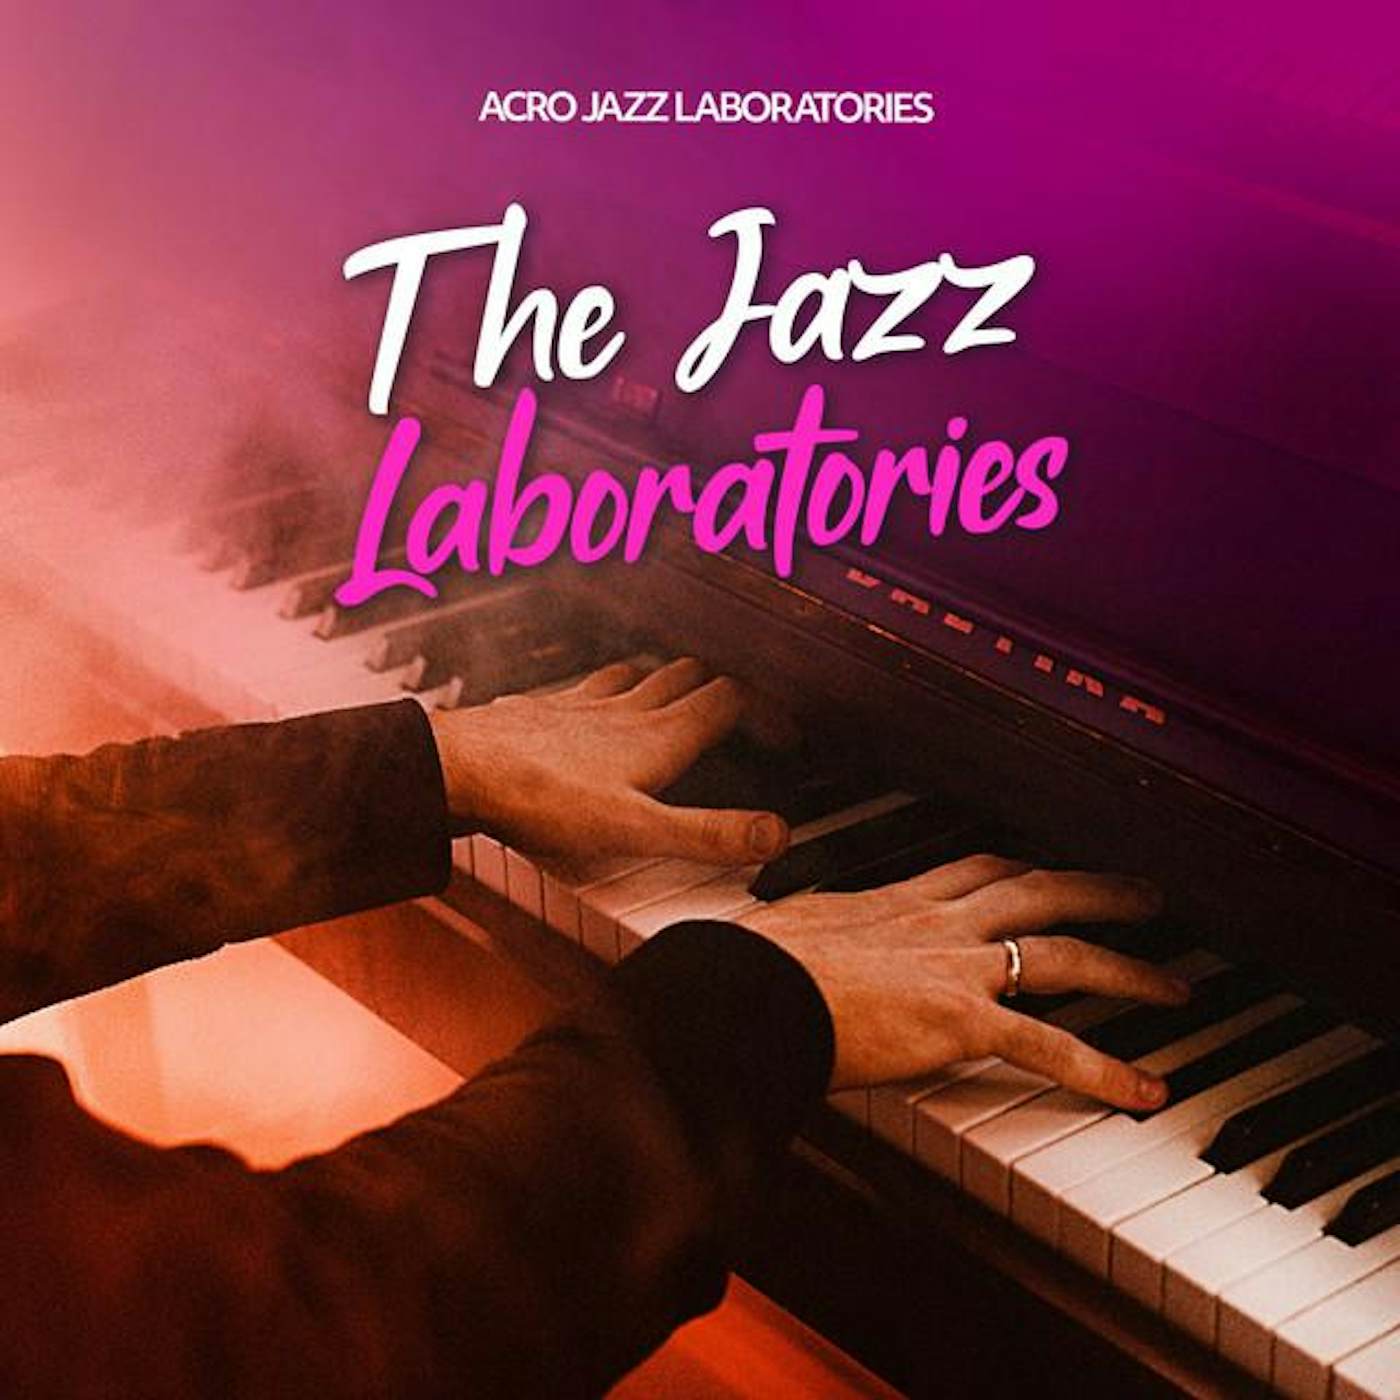 acro jazz laboratories